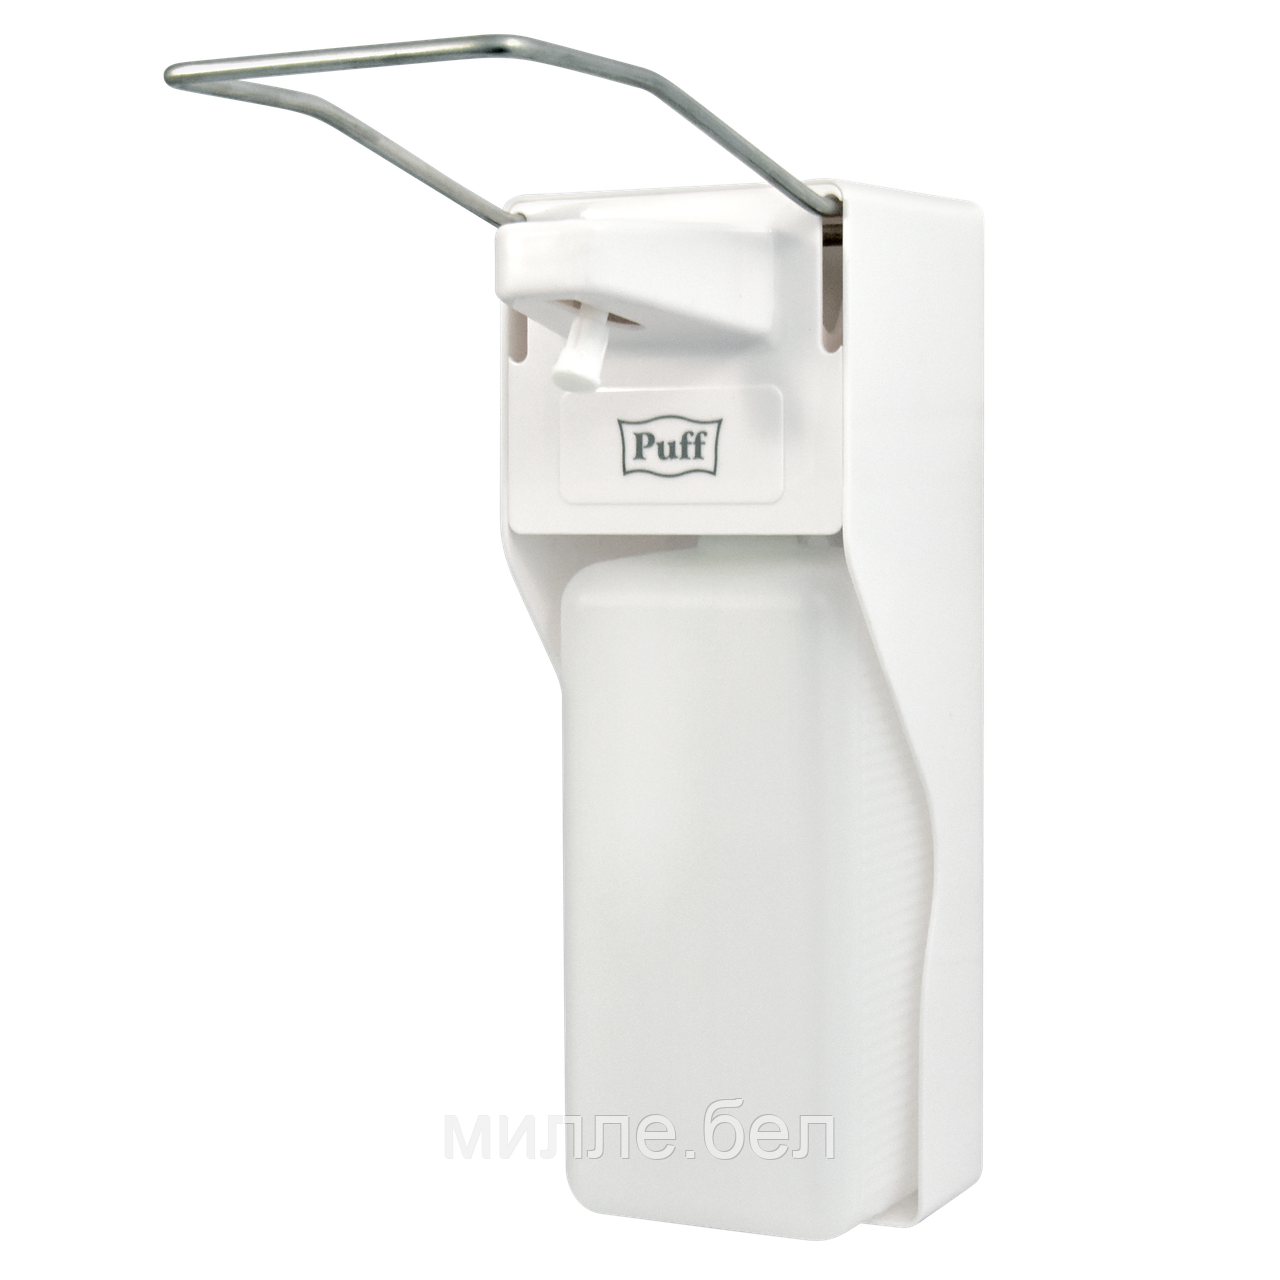 Локтевой дозатор PUFF-8197 (1 л) для жидкого мыла и антисептиков (спрей/капля)